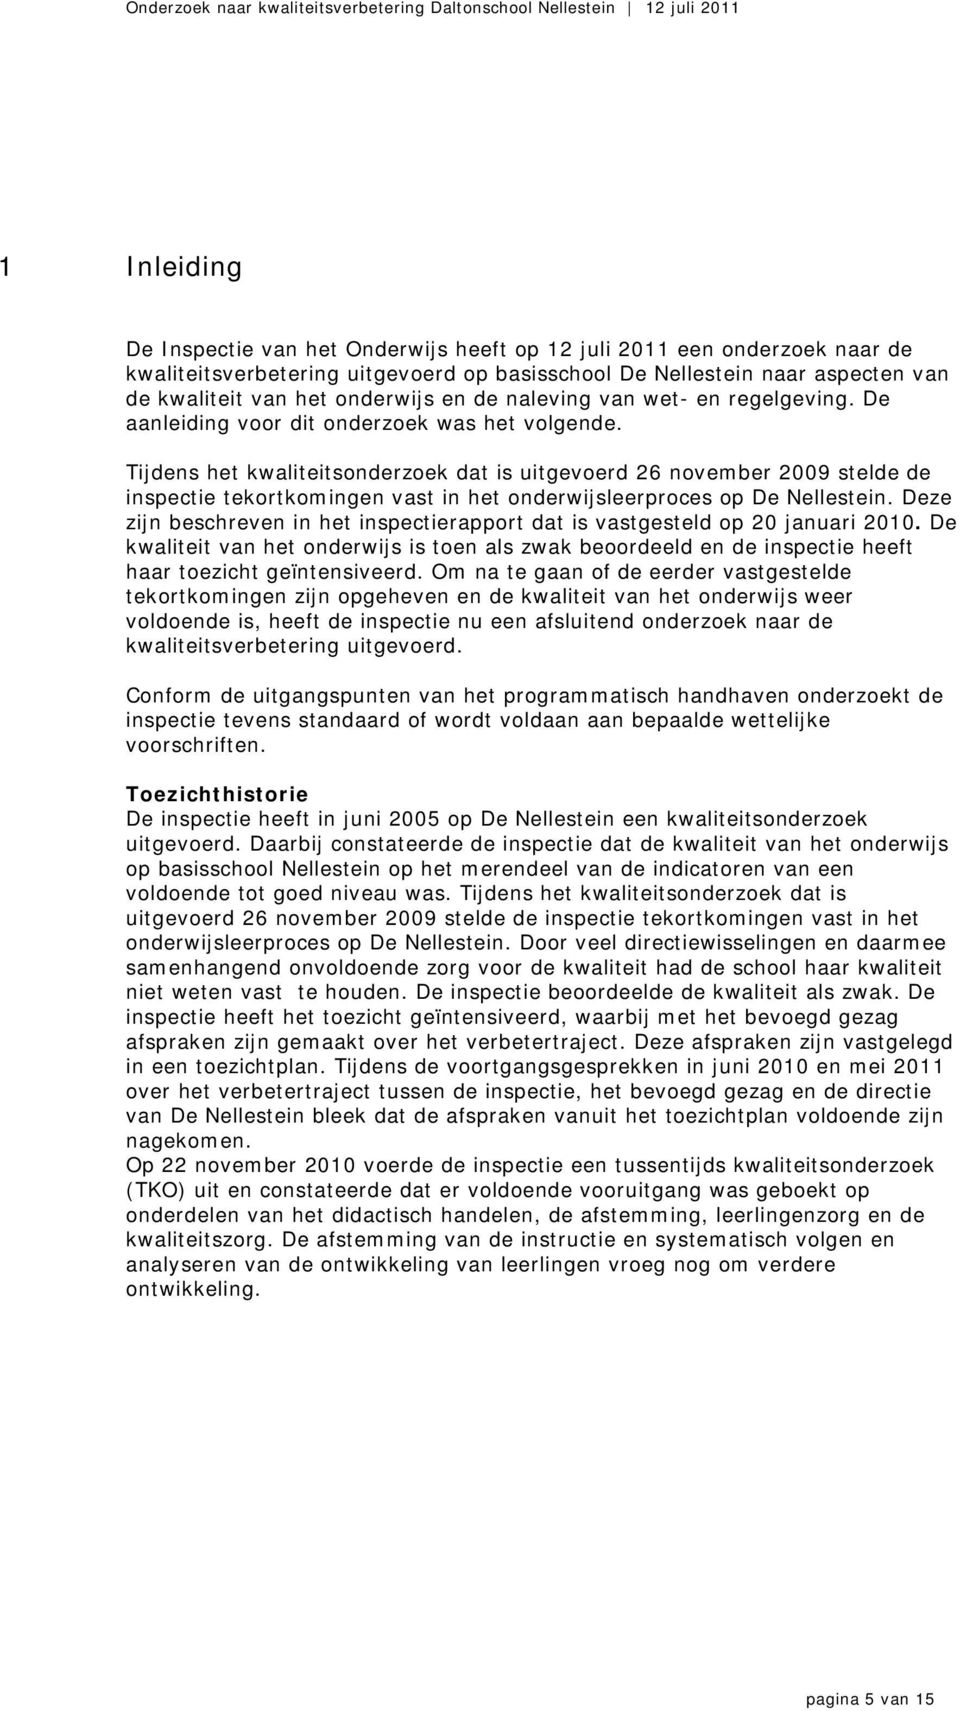 Tijdens het kwaliteitsonderzoek dat is uitgevoerd 26 november 2009 stelde de inspectie tekortkomingen vast in het onderwijsleerproces op De Nellestein.